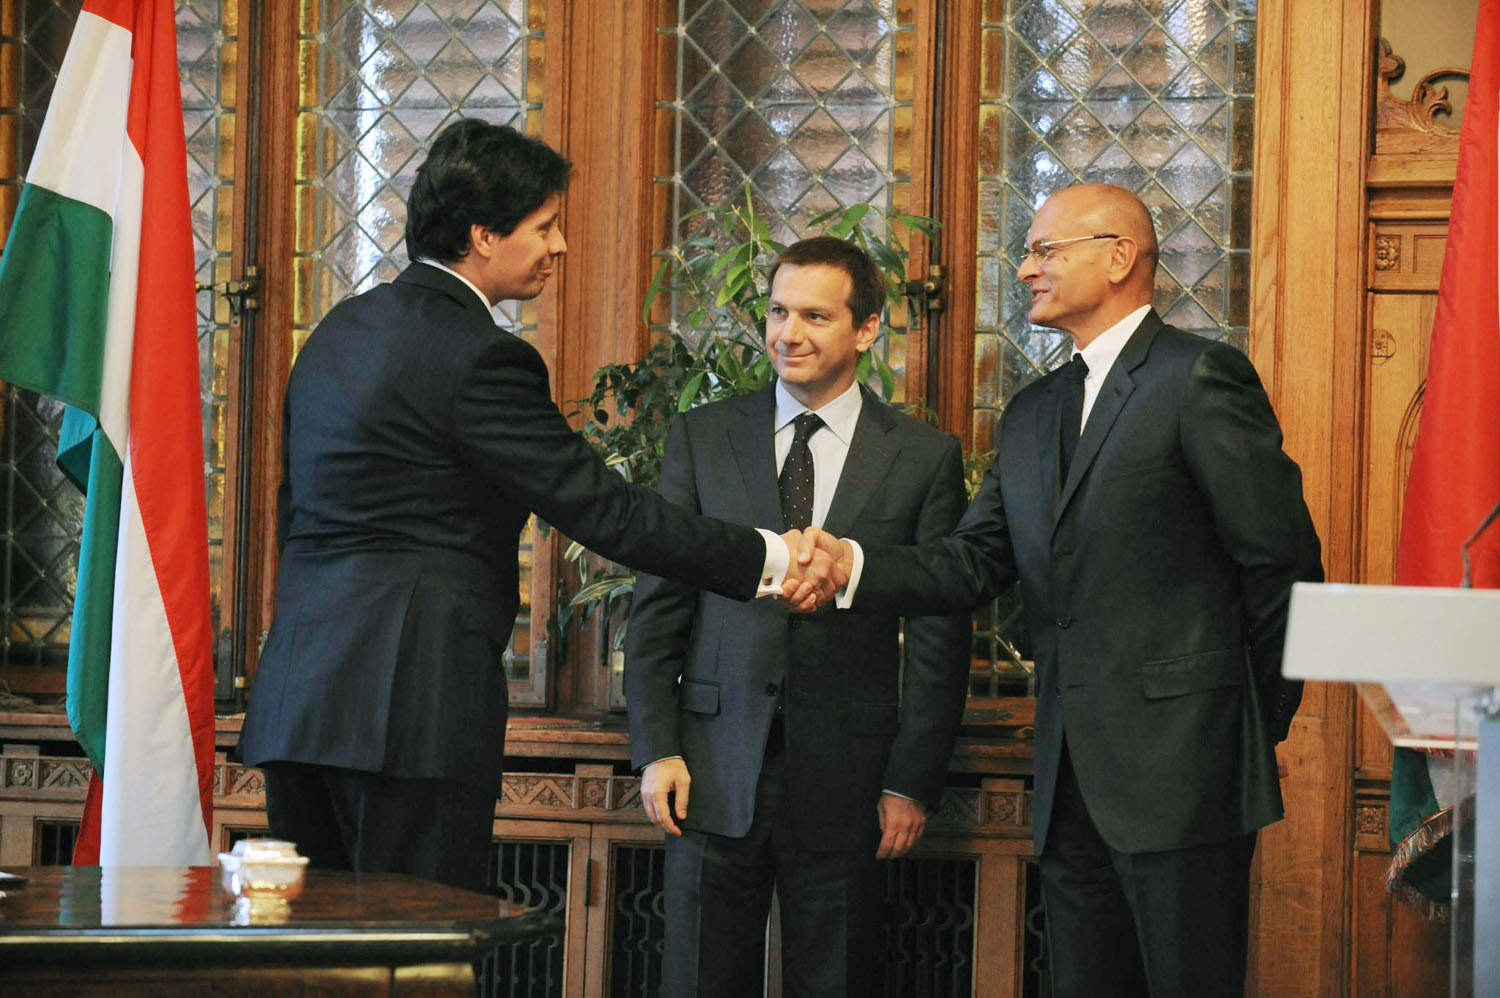 Farkas Ádám felügyeleti elnök, Bajnai Gordon kormányfő és Patai Mihály, a bankszövetség elnöke 2009-ben, a kódex aláírása után 